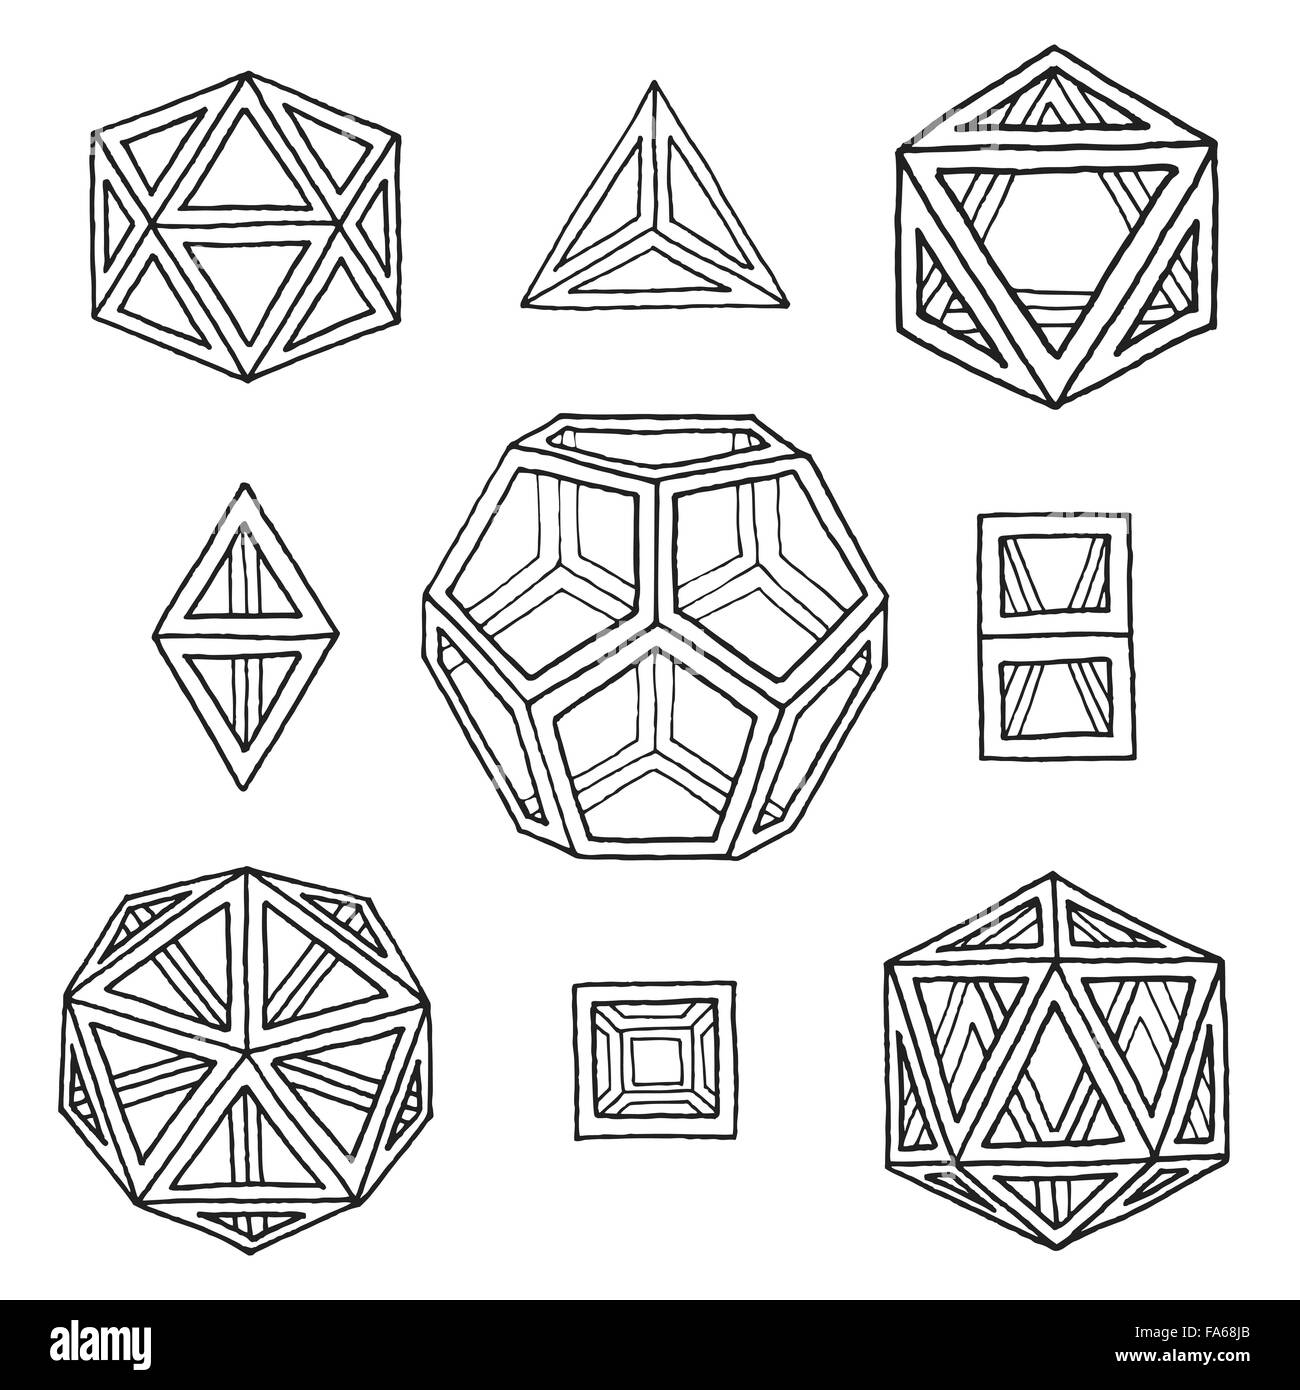 Vektor-schwarzer Umrandung handgezeichnete monochrome platonischen Körper Tetraeder, Würfel, Hexaeder, Oktaeder, Dodekaeder, Ikosaeder Stock Vektor